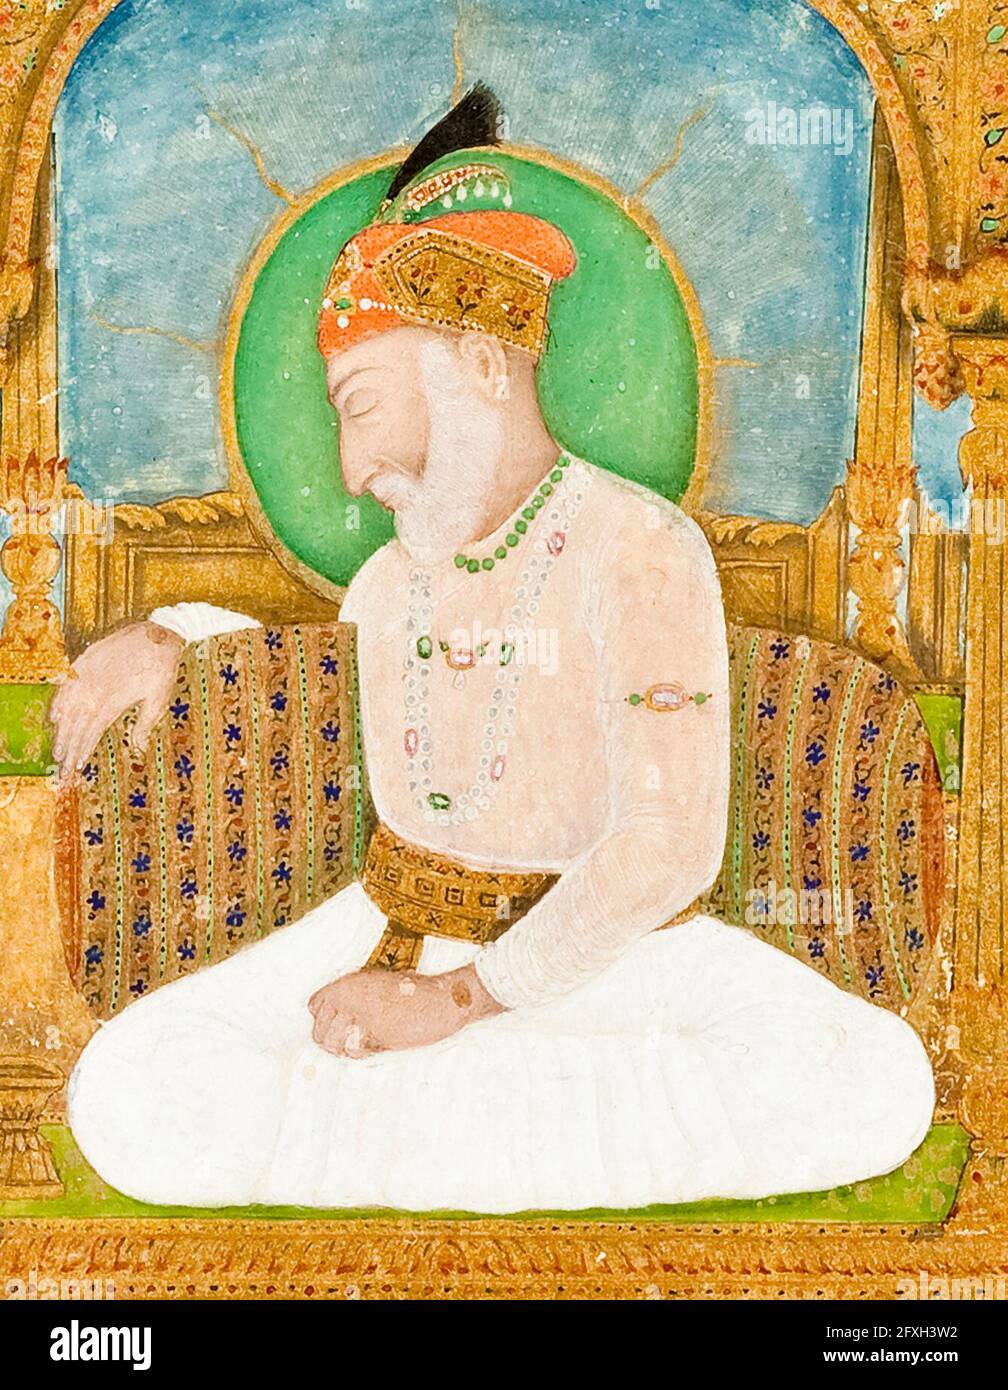 Empereur Shah Alam II (1728-1806), 17e empereur moghol (1760-1788 et 1788-1806), portrait peint par Khair Ullah Musawir, 1801 Banque D'Images